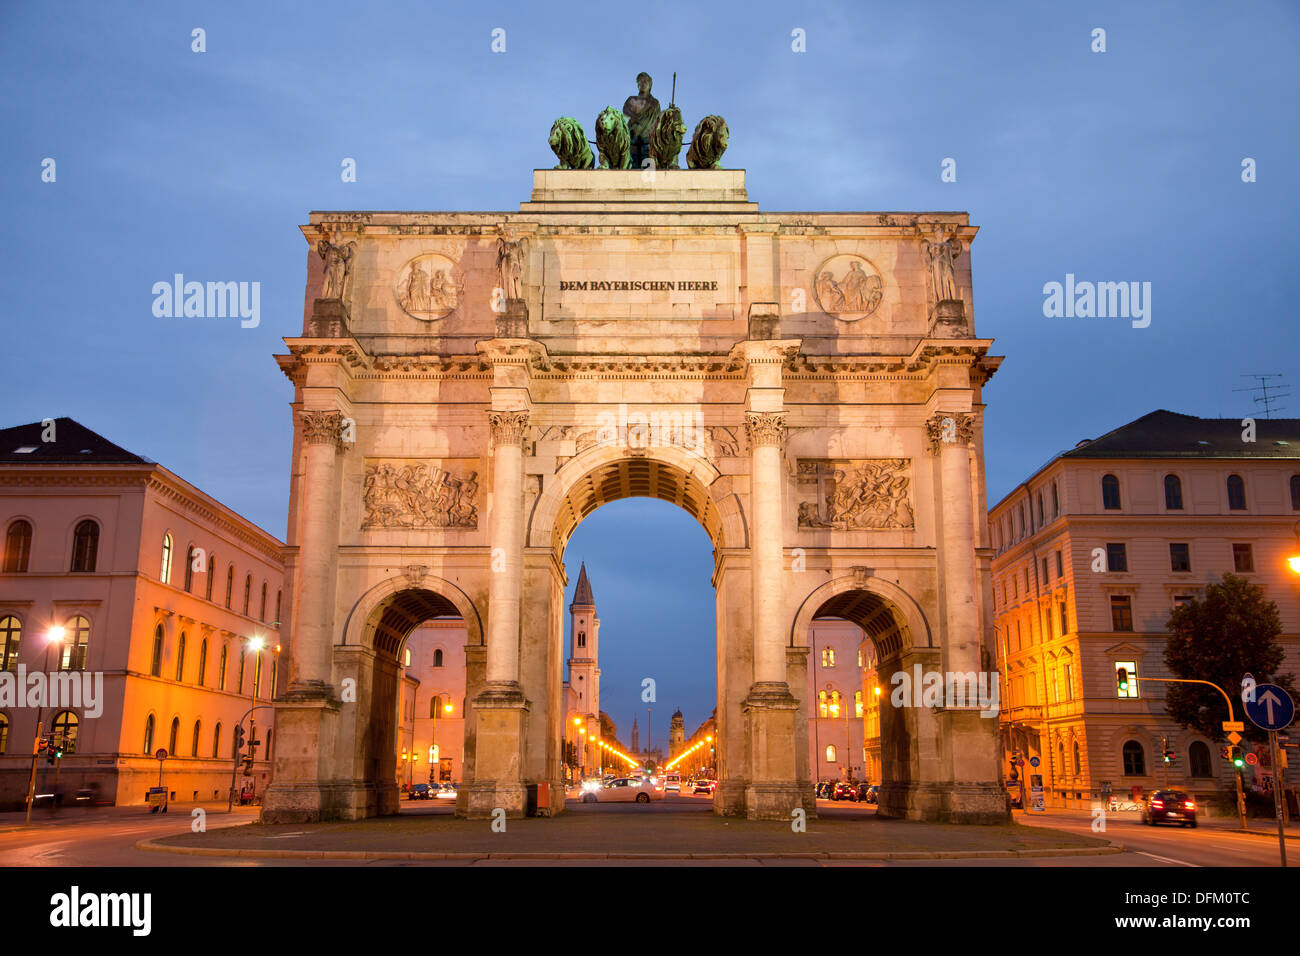 La Siegestor (Porte de la Victoire), un arc de triomphe à trois arches à Munich, Bavière, Allemagne Banque D'Images